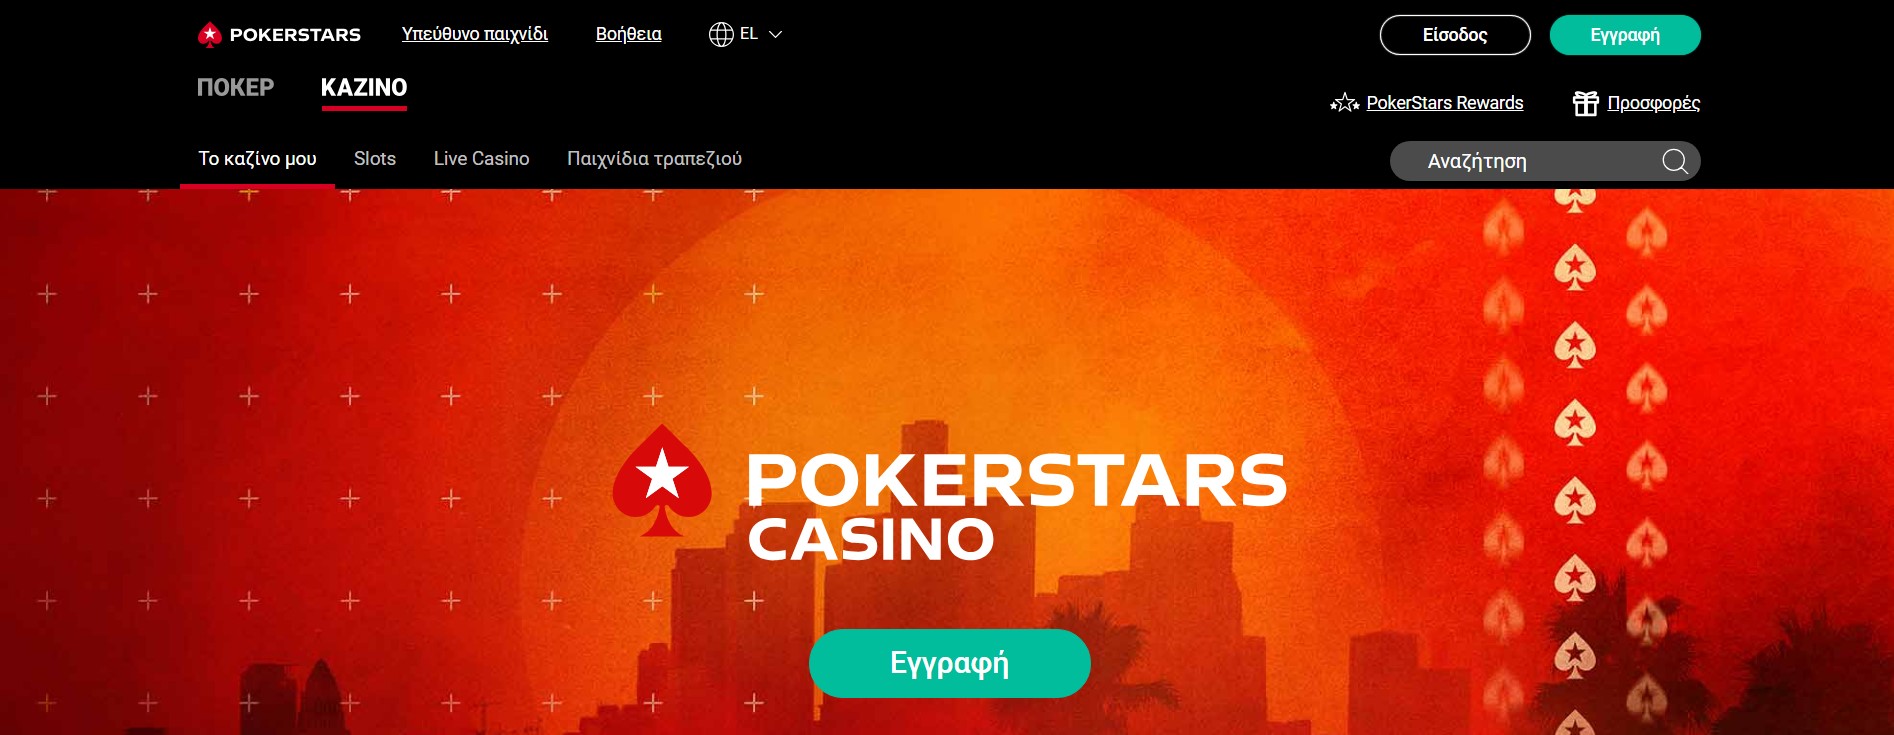 Μπόνους του PokerStars Casino